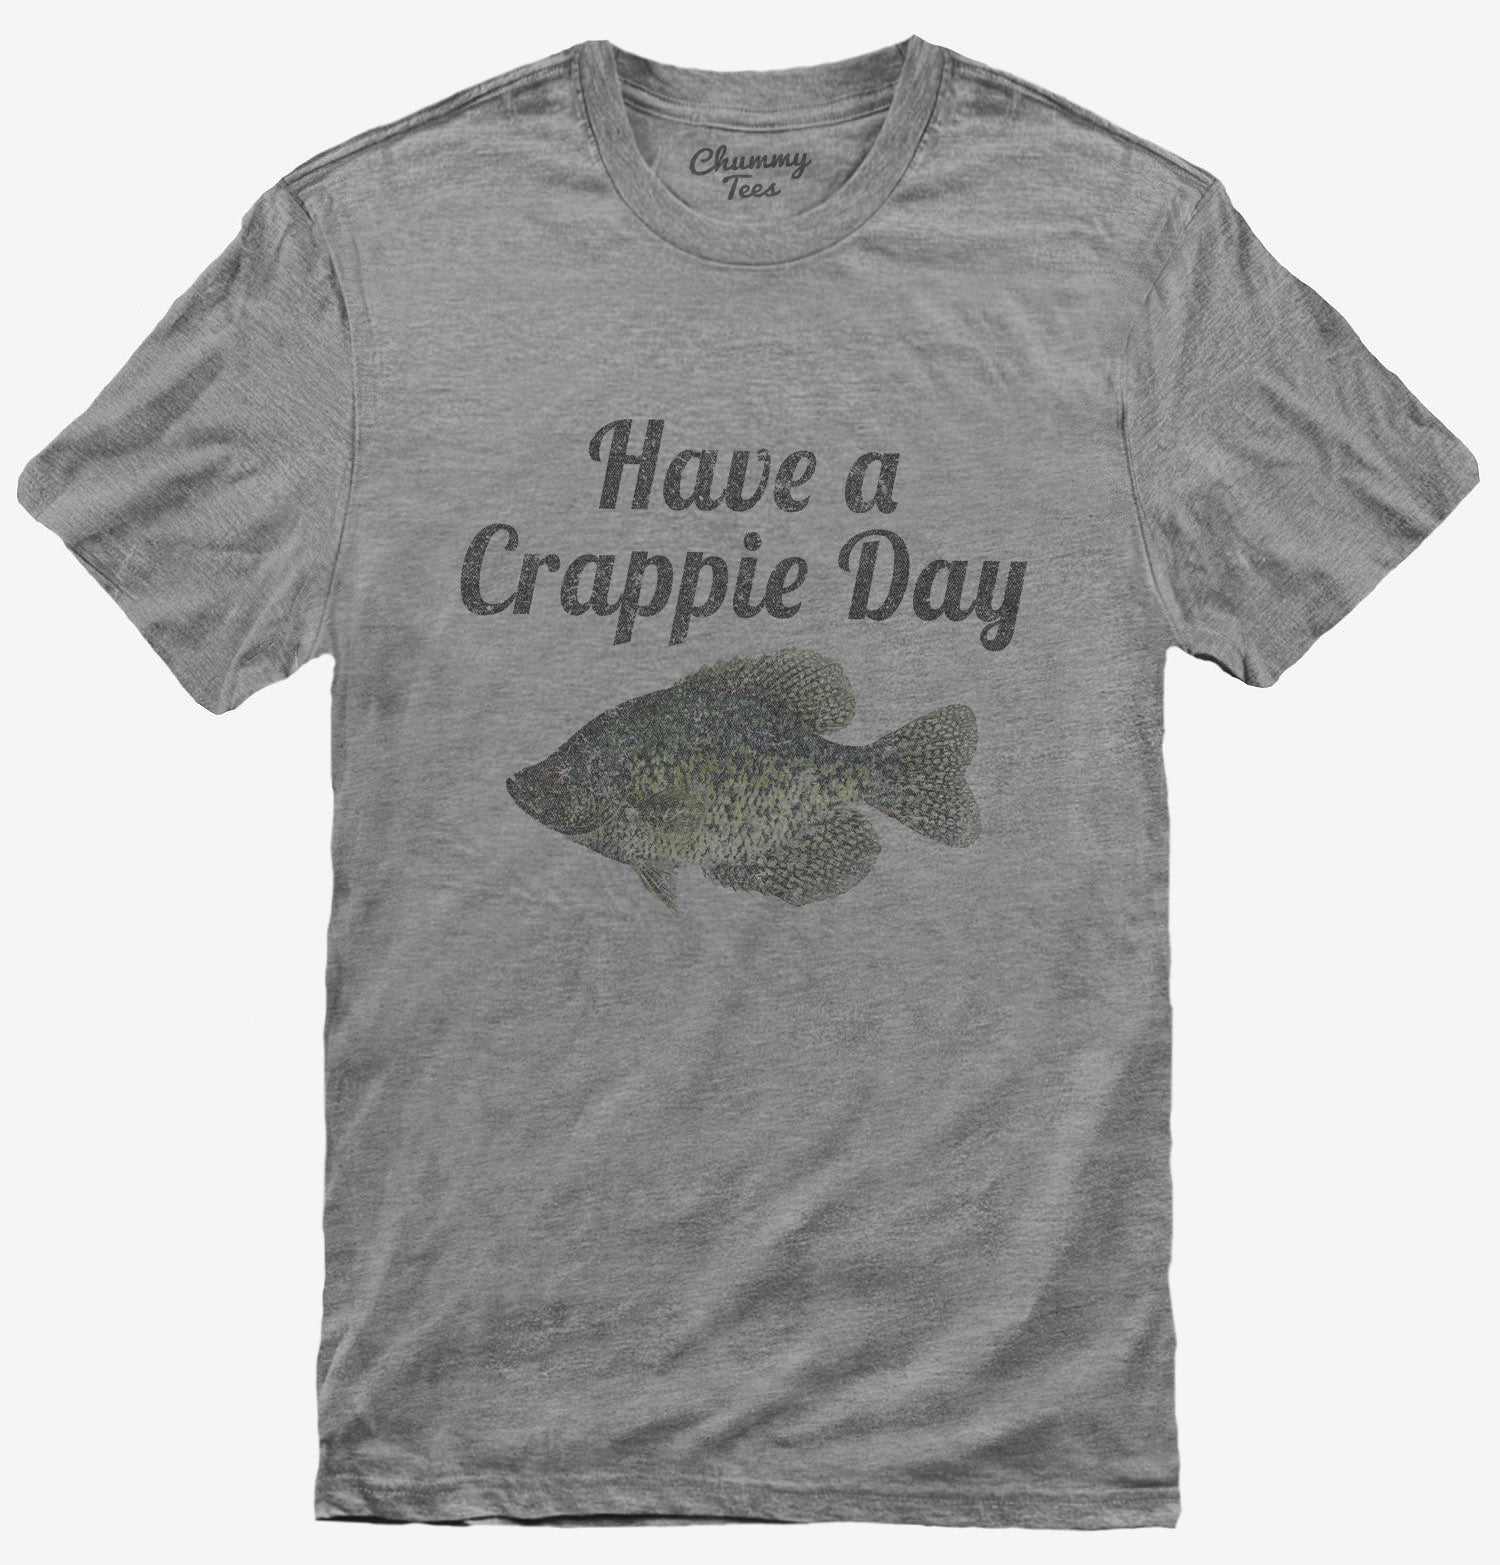 Master Baiter Funny Fishing T-Shirt